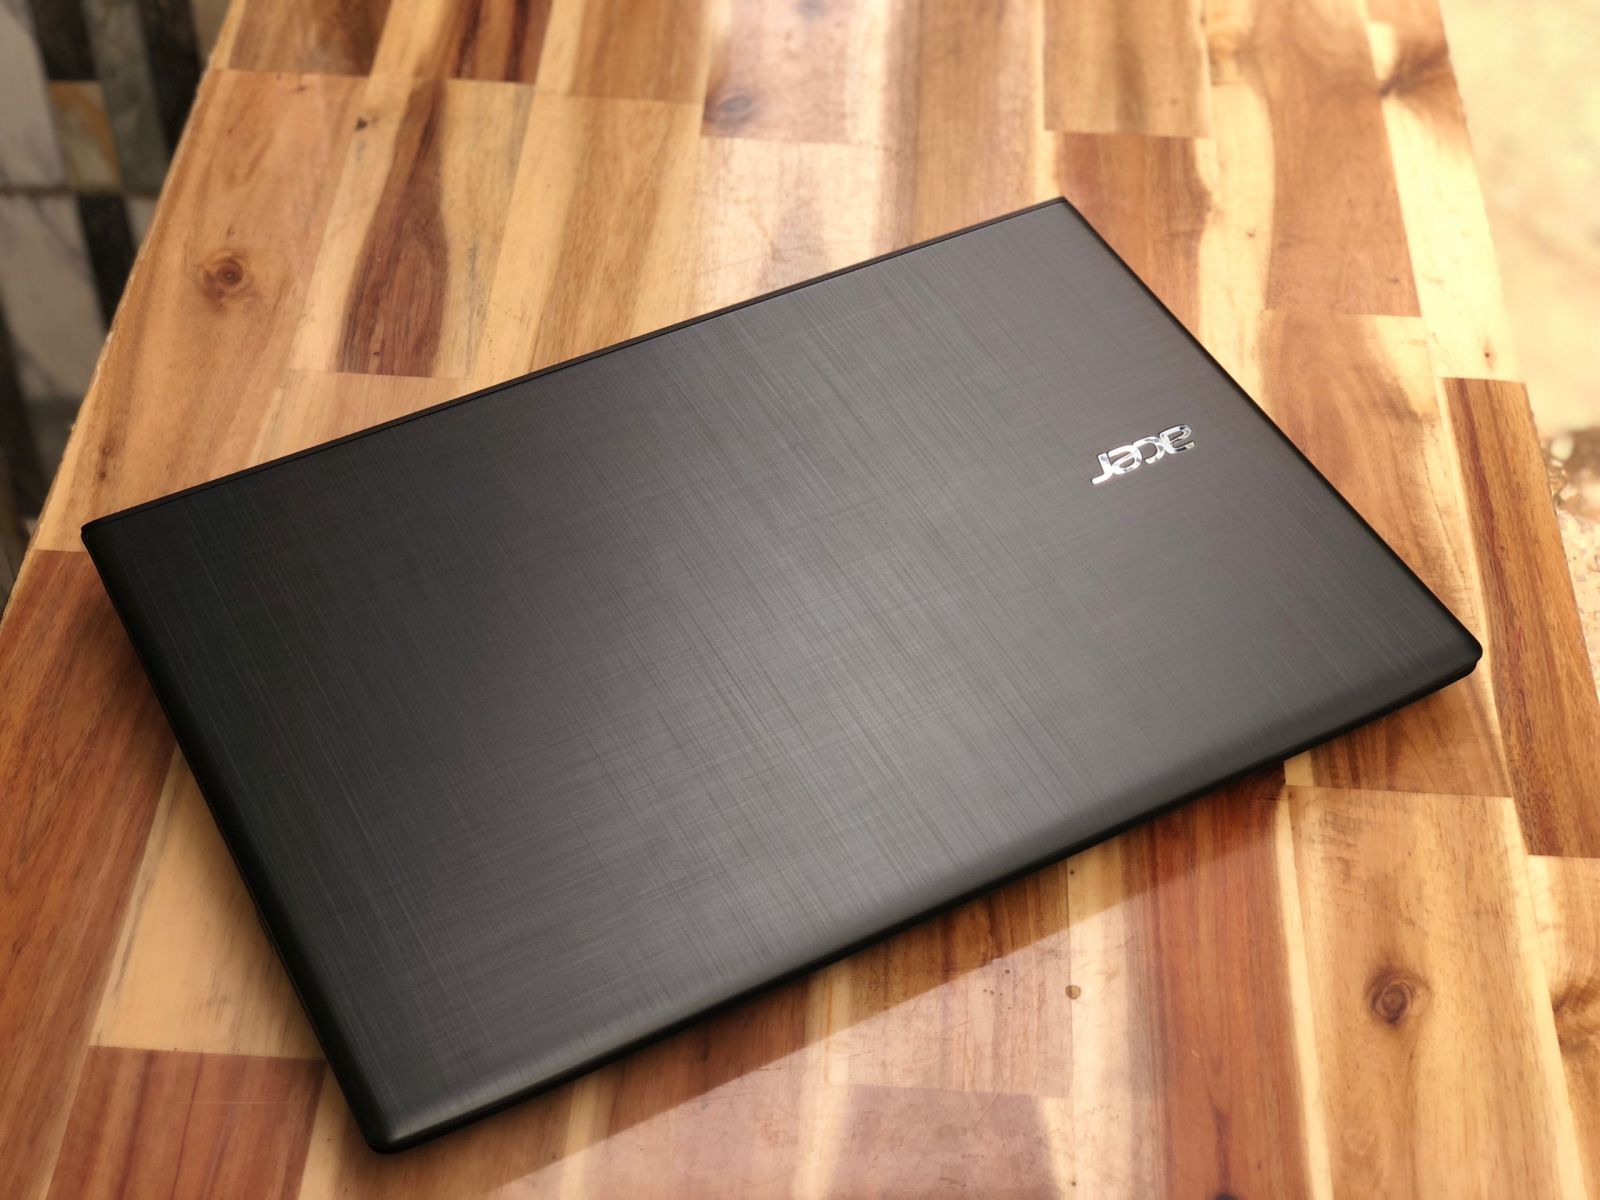 Laptop Acer E5-576G/ i7 7500U/ 8G/ SSD128+500G/ Vga GT940MX/ Full HD/ Chuyên Game Đồ Họa/ Giá rẻ5